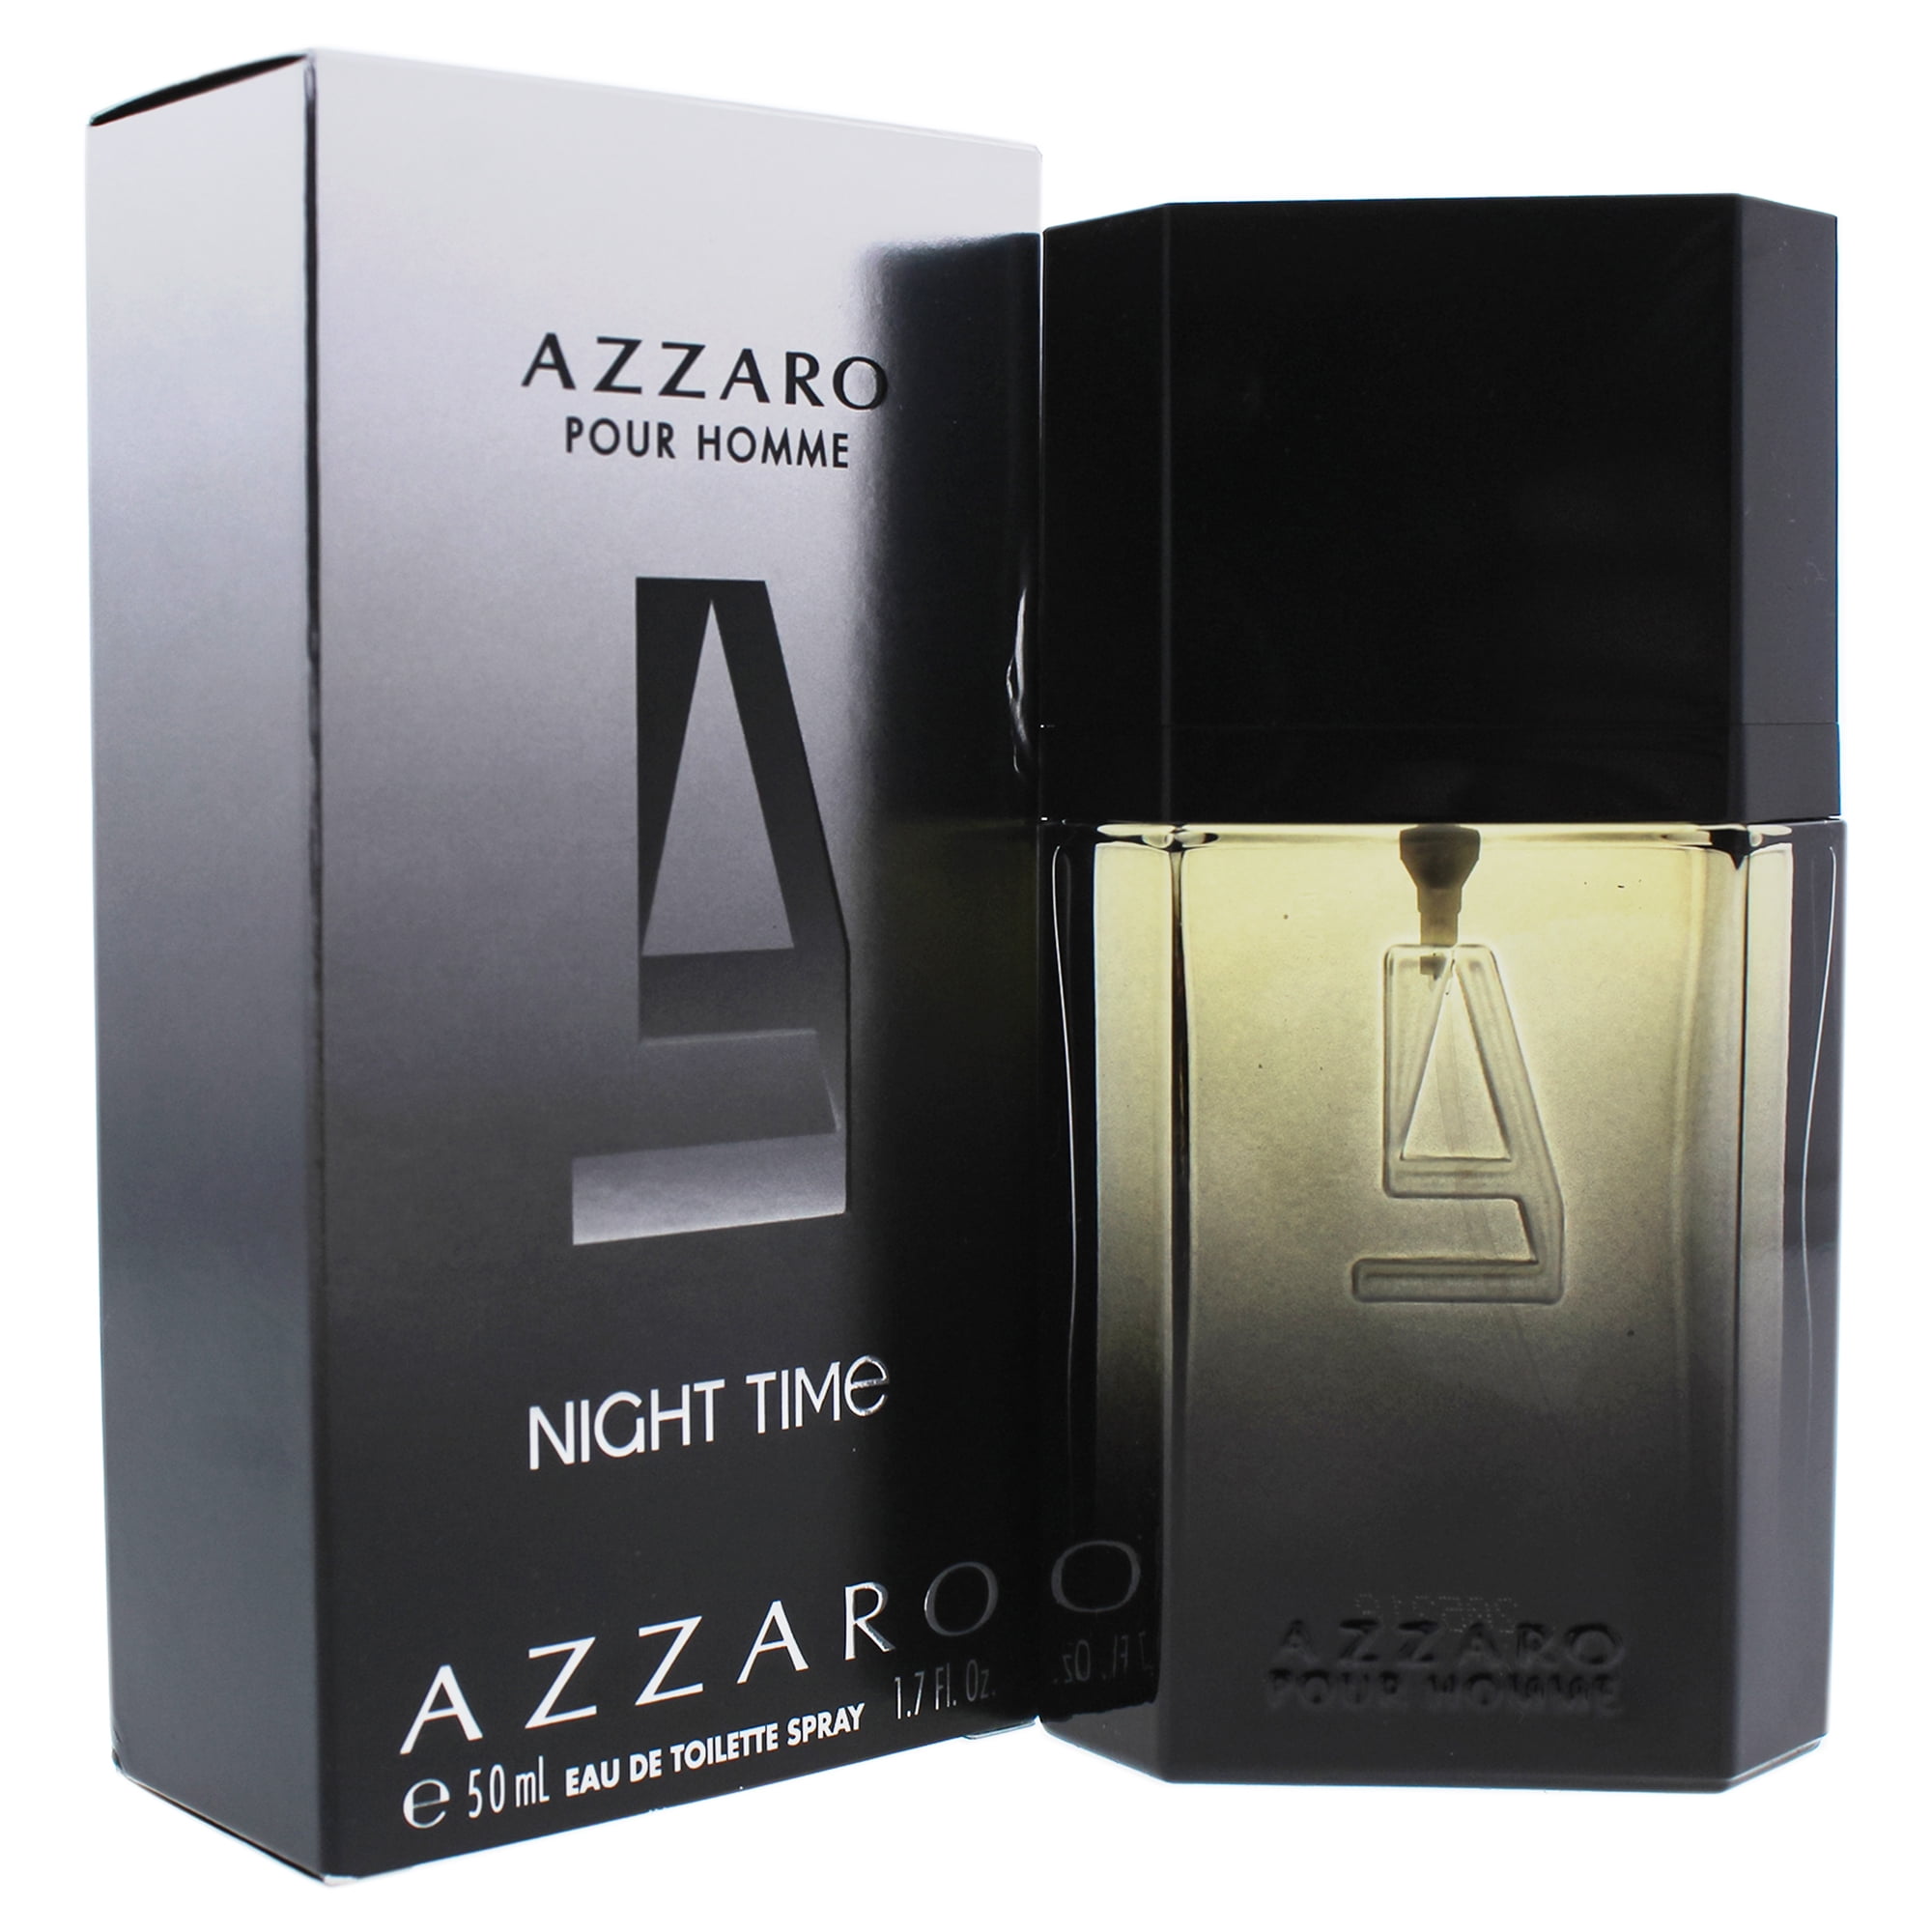 azzaro perfume night time